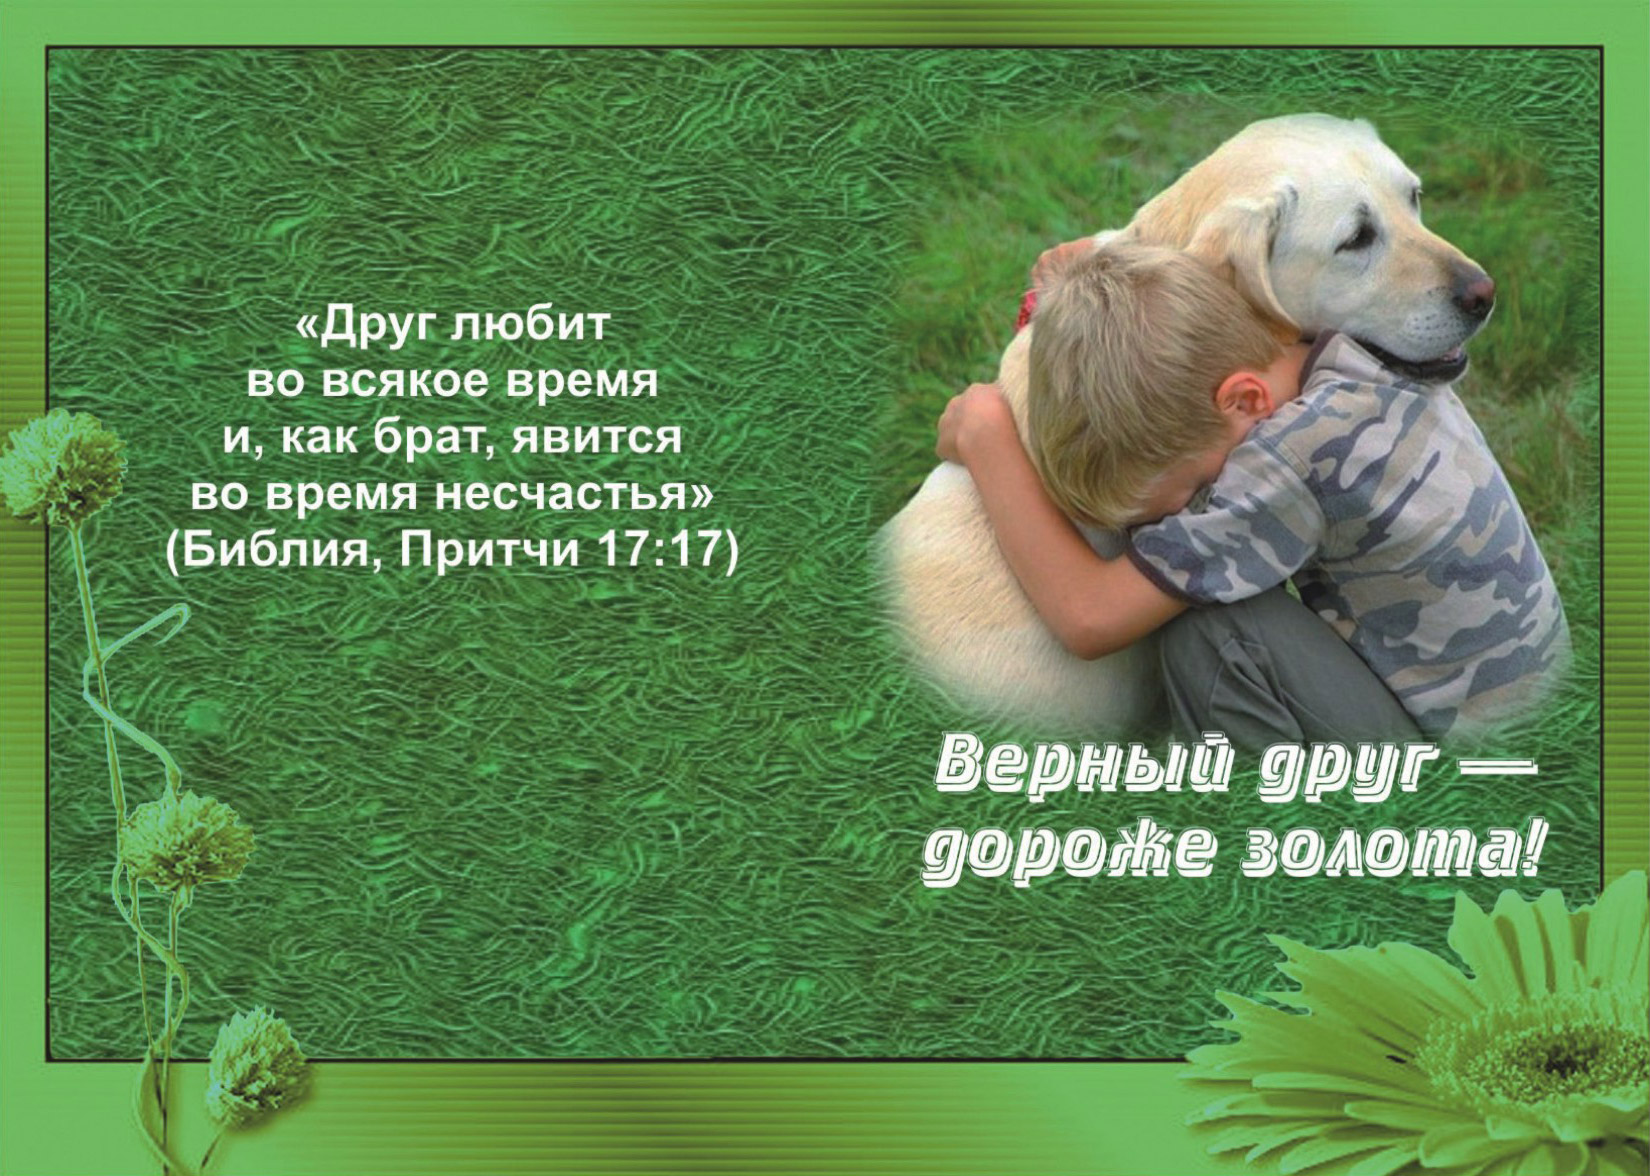 Мой любимый друг россия. Цитаты из Библии про дружбу. Стихи из Библии про дружбу. Стихи из Библии для детей. Красивые стихи о дружбе и друзьях.